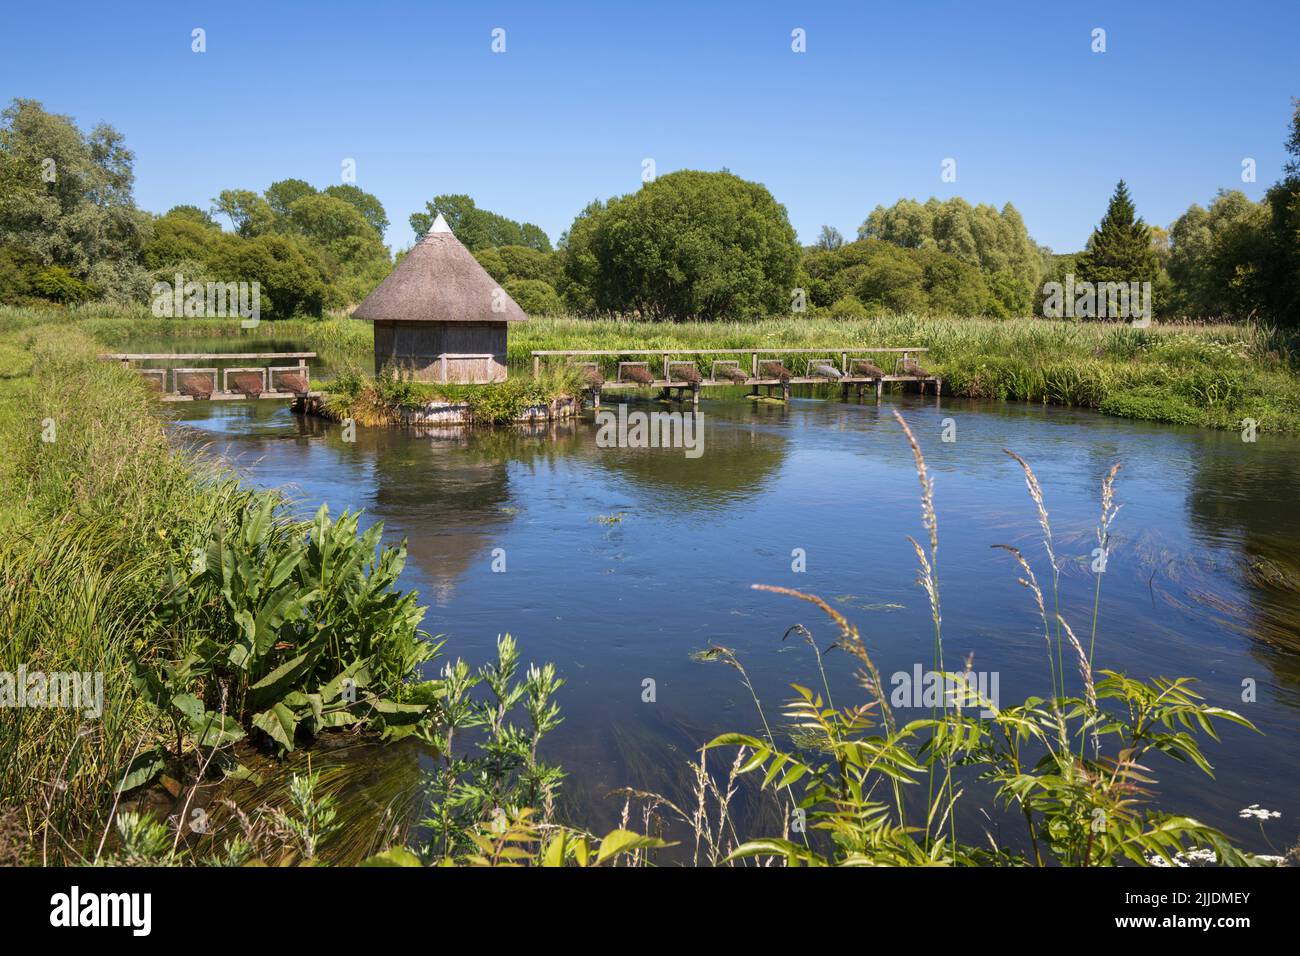 Thatched fishing hut on the River Test, Longstock, Stockbridge, Hampshire, England, United Kingdom, Europe Stock Photo